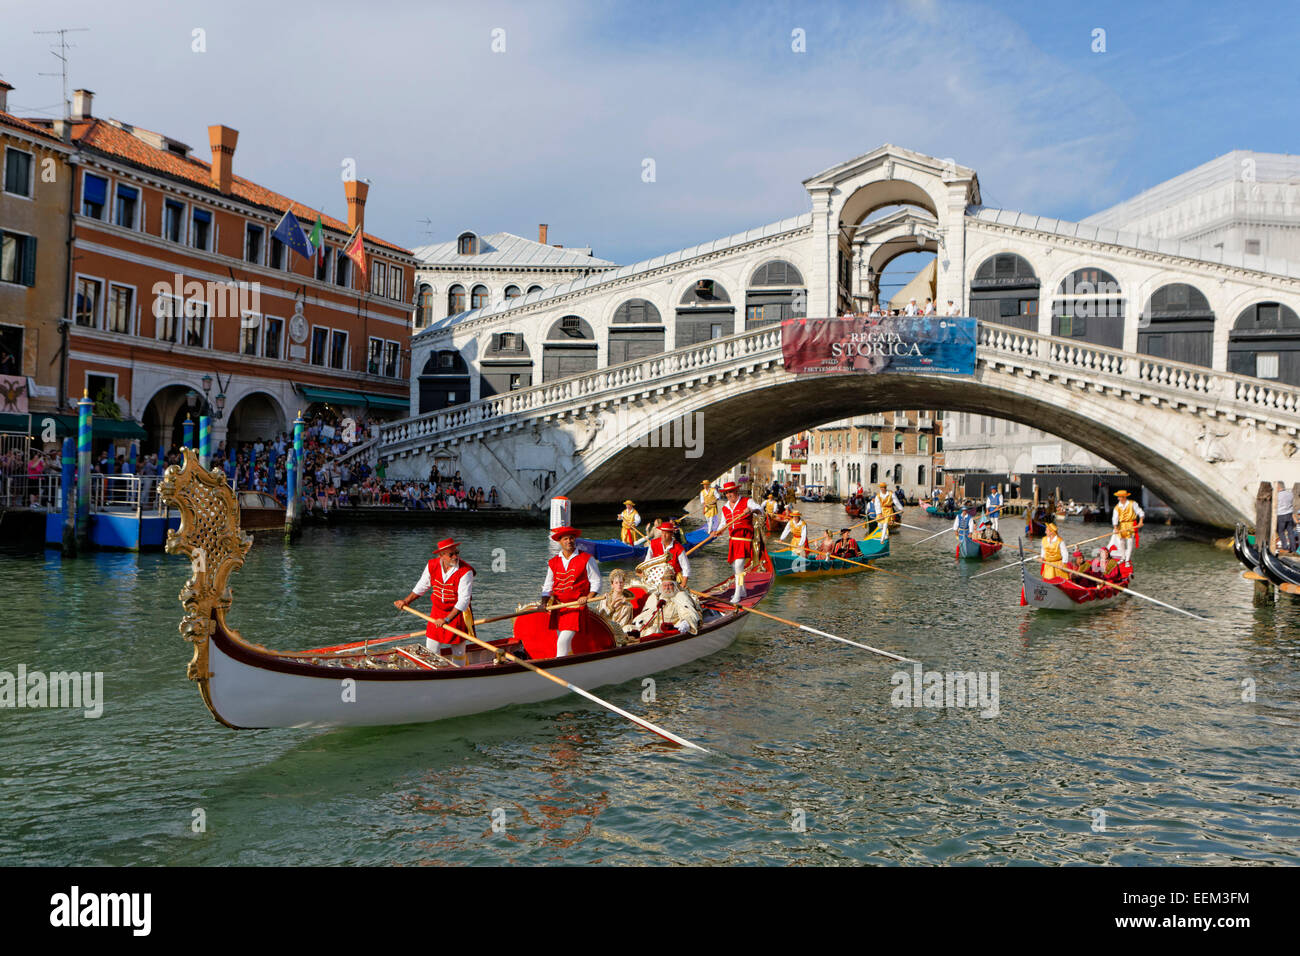 Regata Storica, la régate historique, sur le Grand Canal, Venise, Vénétie, Italie Banque D'Images